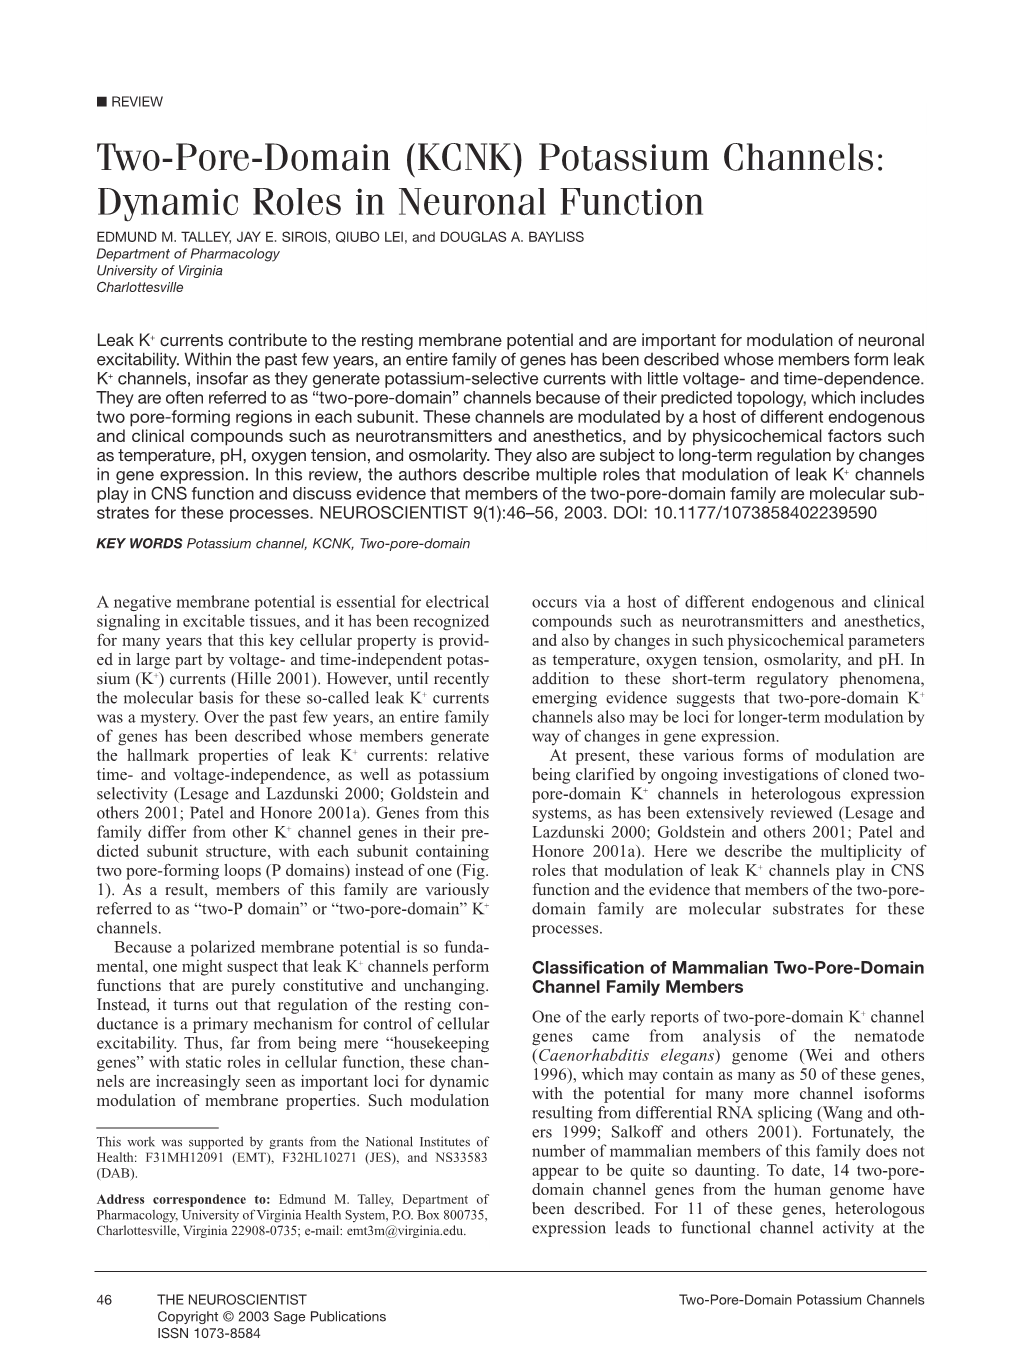 (KCNK) Potassium Channels: Dynamic Roles in Neuronal Function EDMUND M